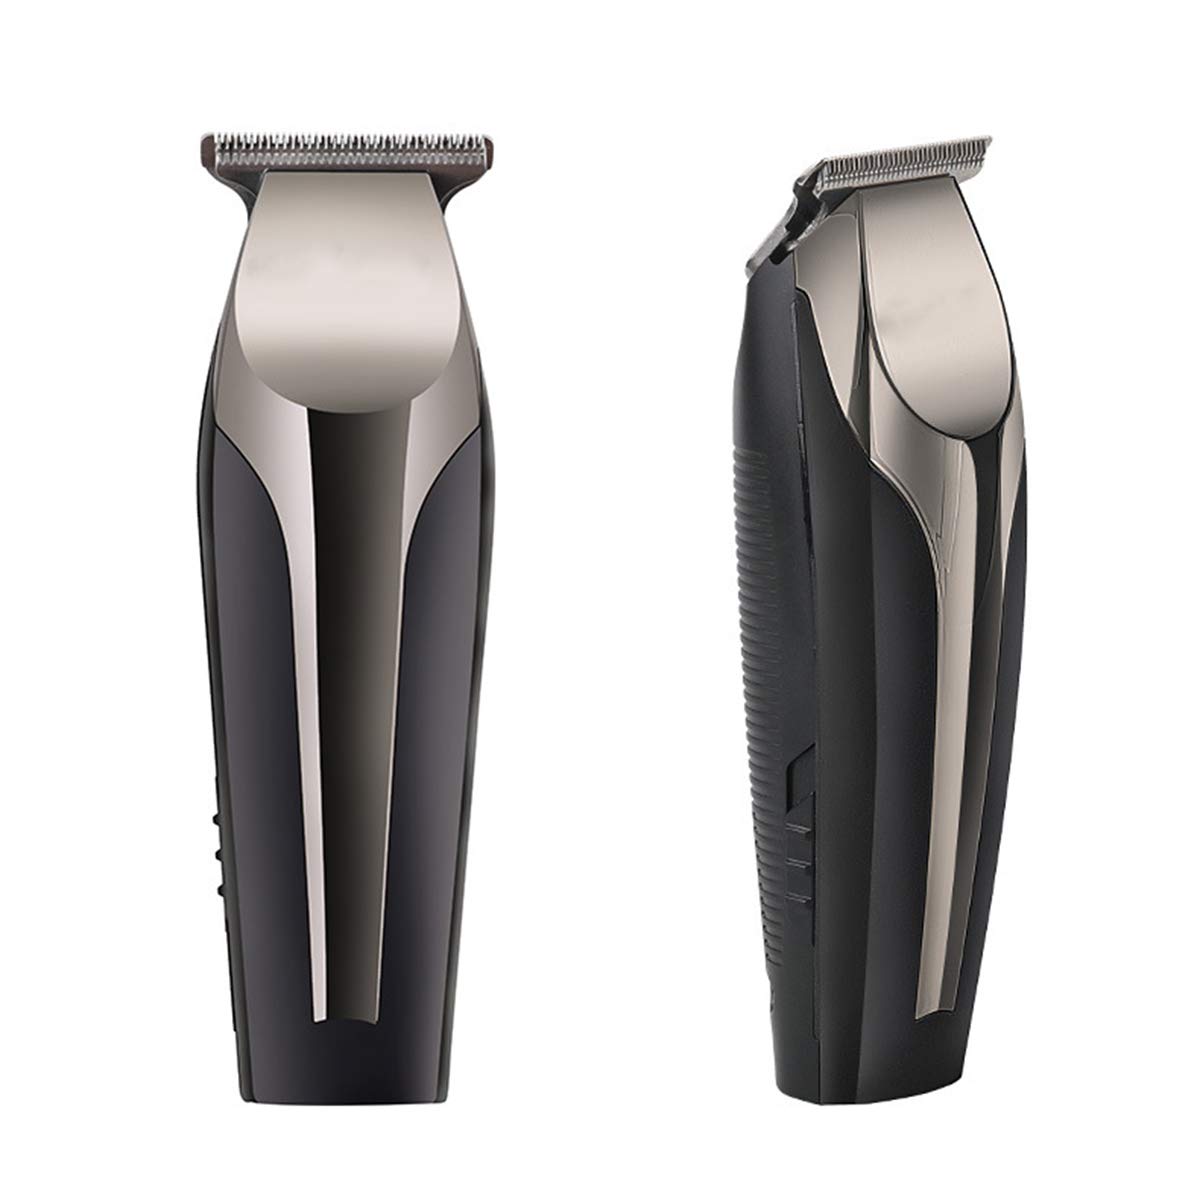 iFCOW Elektrischer Haarschneider für Herren, über USB wiederaufladbar, kabellos, Haarschneidemaschine mit 3 Führungskämmen